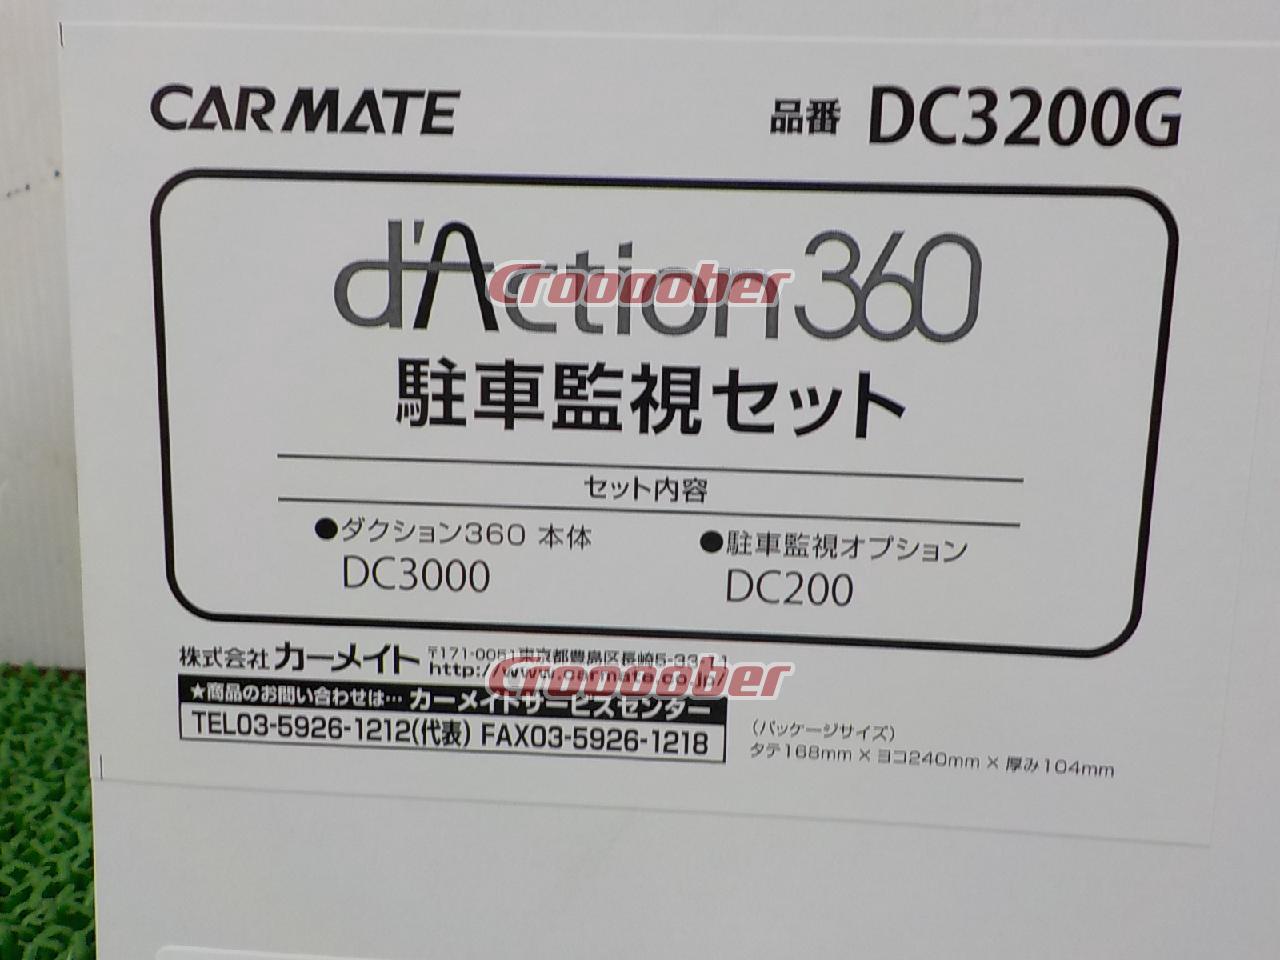 CARMATE DC3200G 業界初,衝撃センサー 360度カメル 『d'Action 360